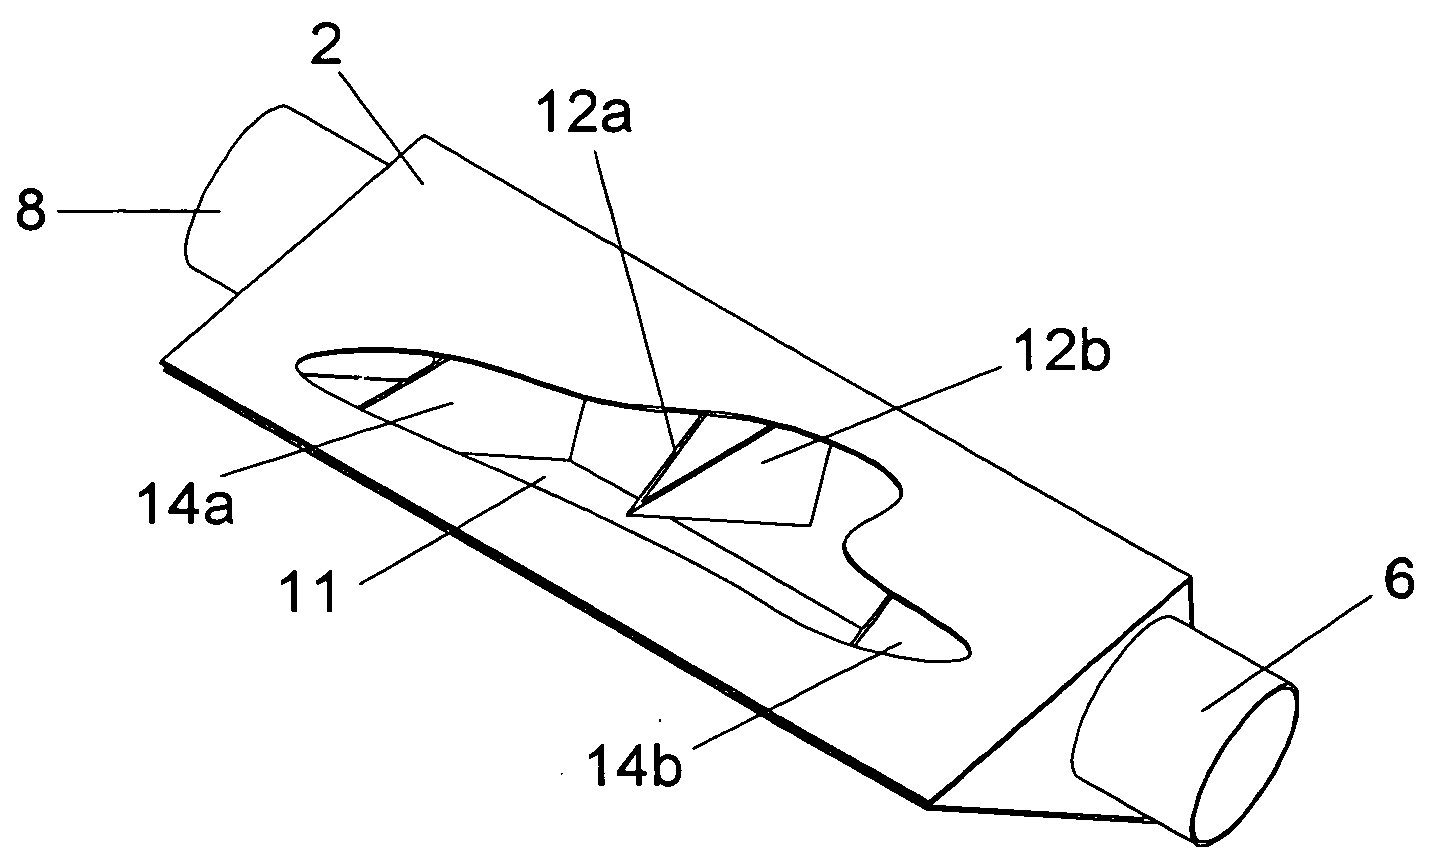 Triangular cross section exhaust muffler